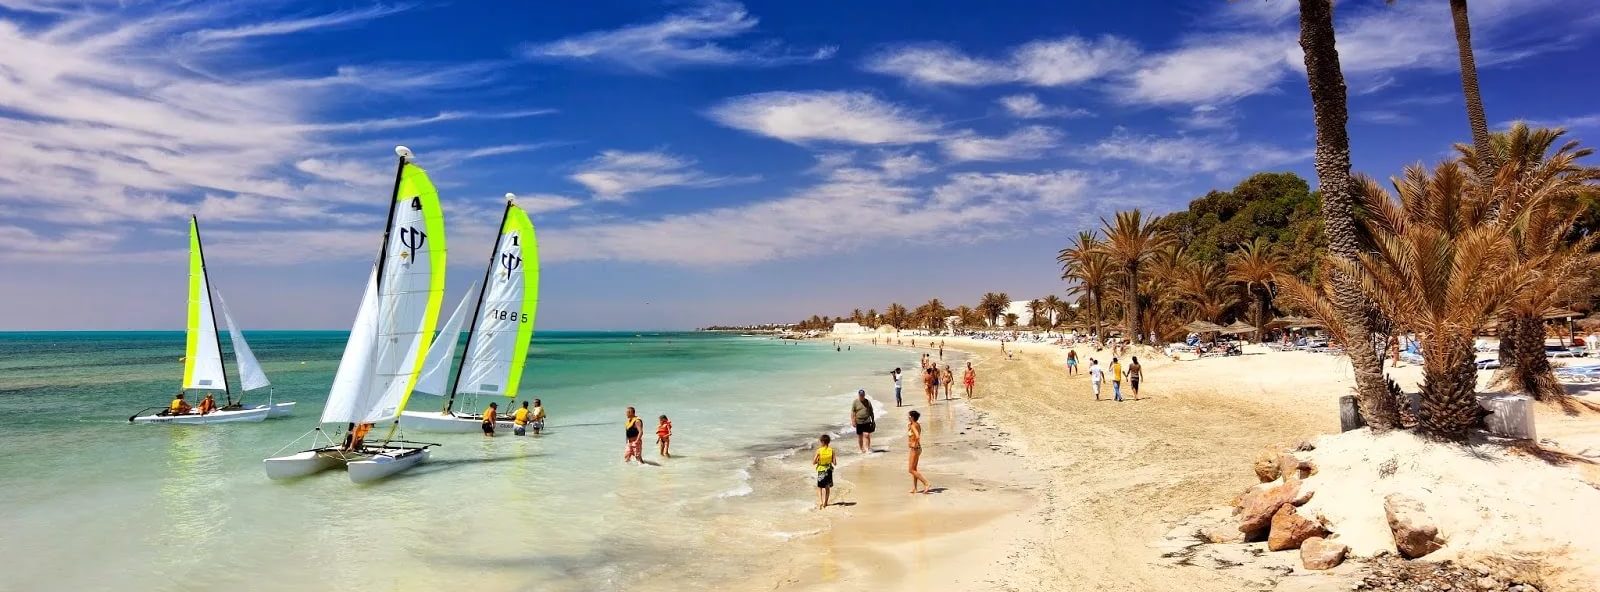 Горящие туры и путевки в Тунис, дешевые цены на отдых в Тунисе